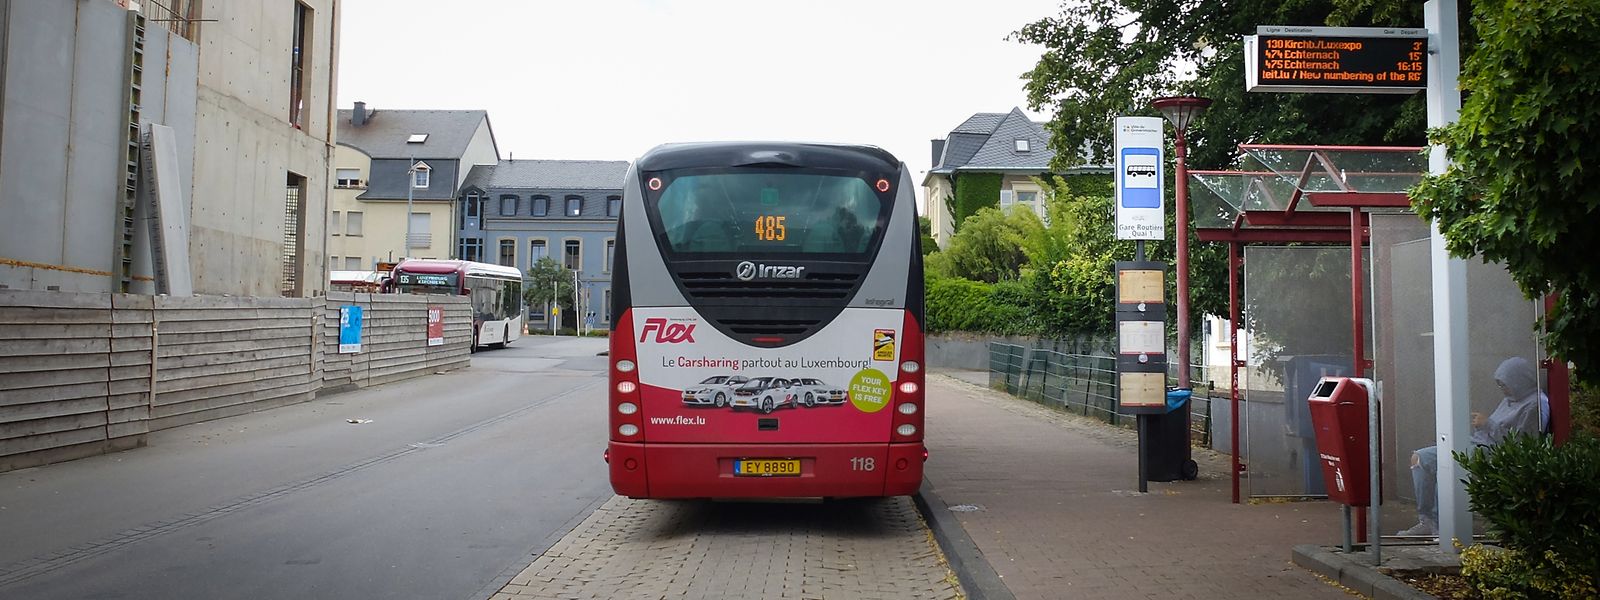 La commune de Grevenmacher prévoit d'installer des sanitaires pour les chauffeurs de bus à l'arrêt de bus du centre culturel.